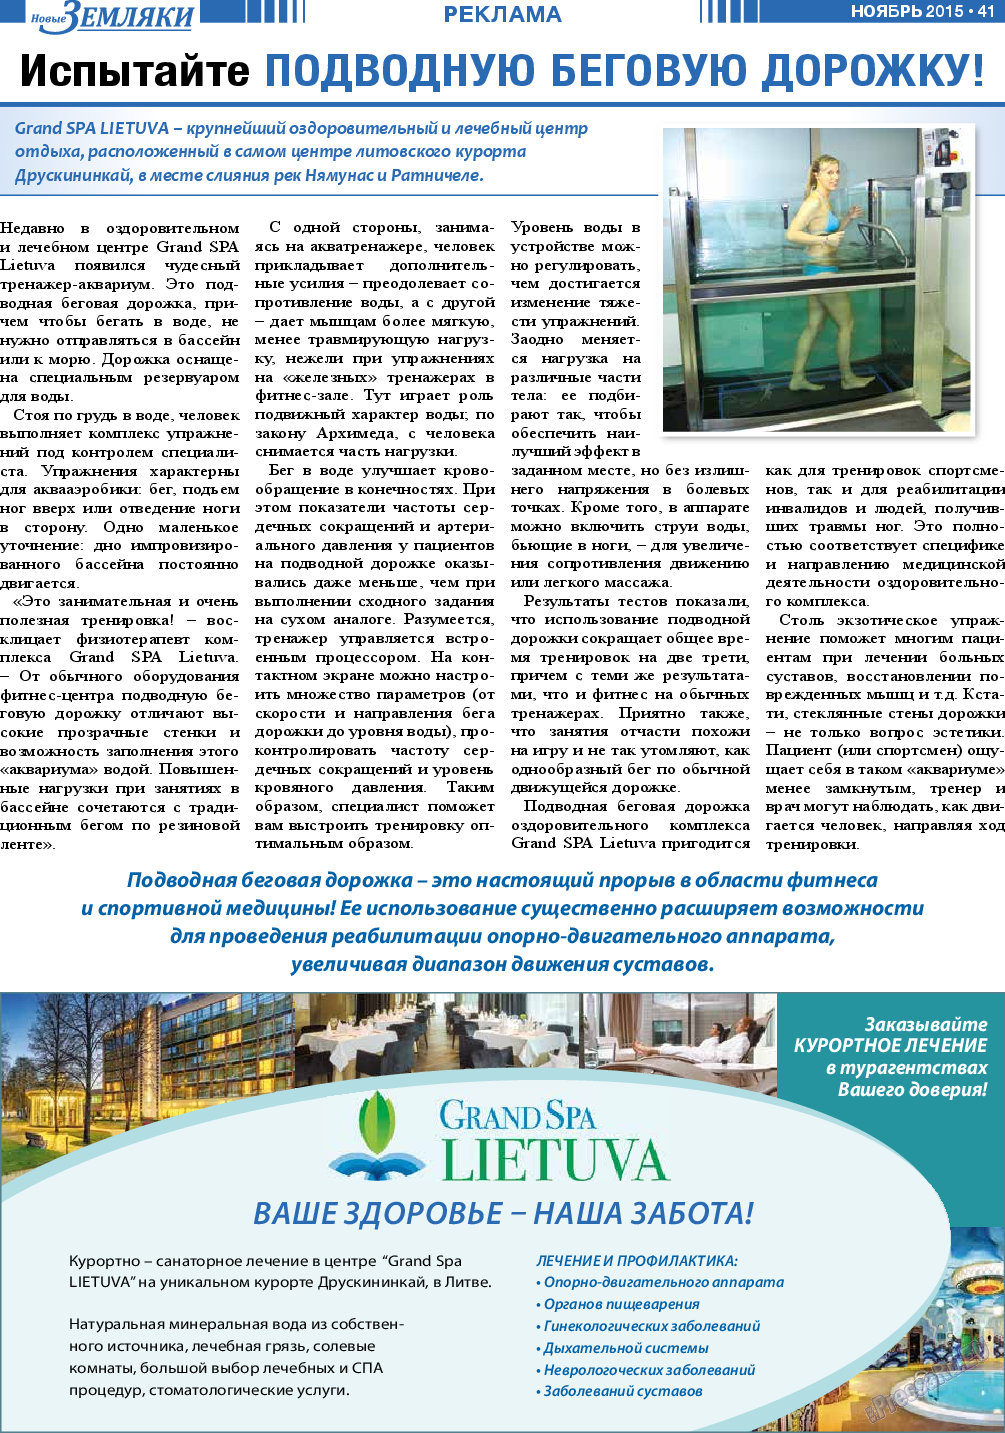 Новые Земляки, газета. 2015 №11 стр.41